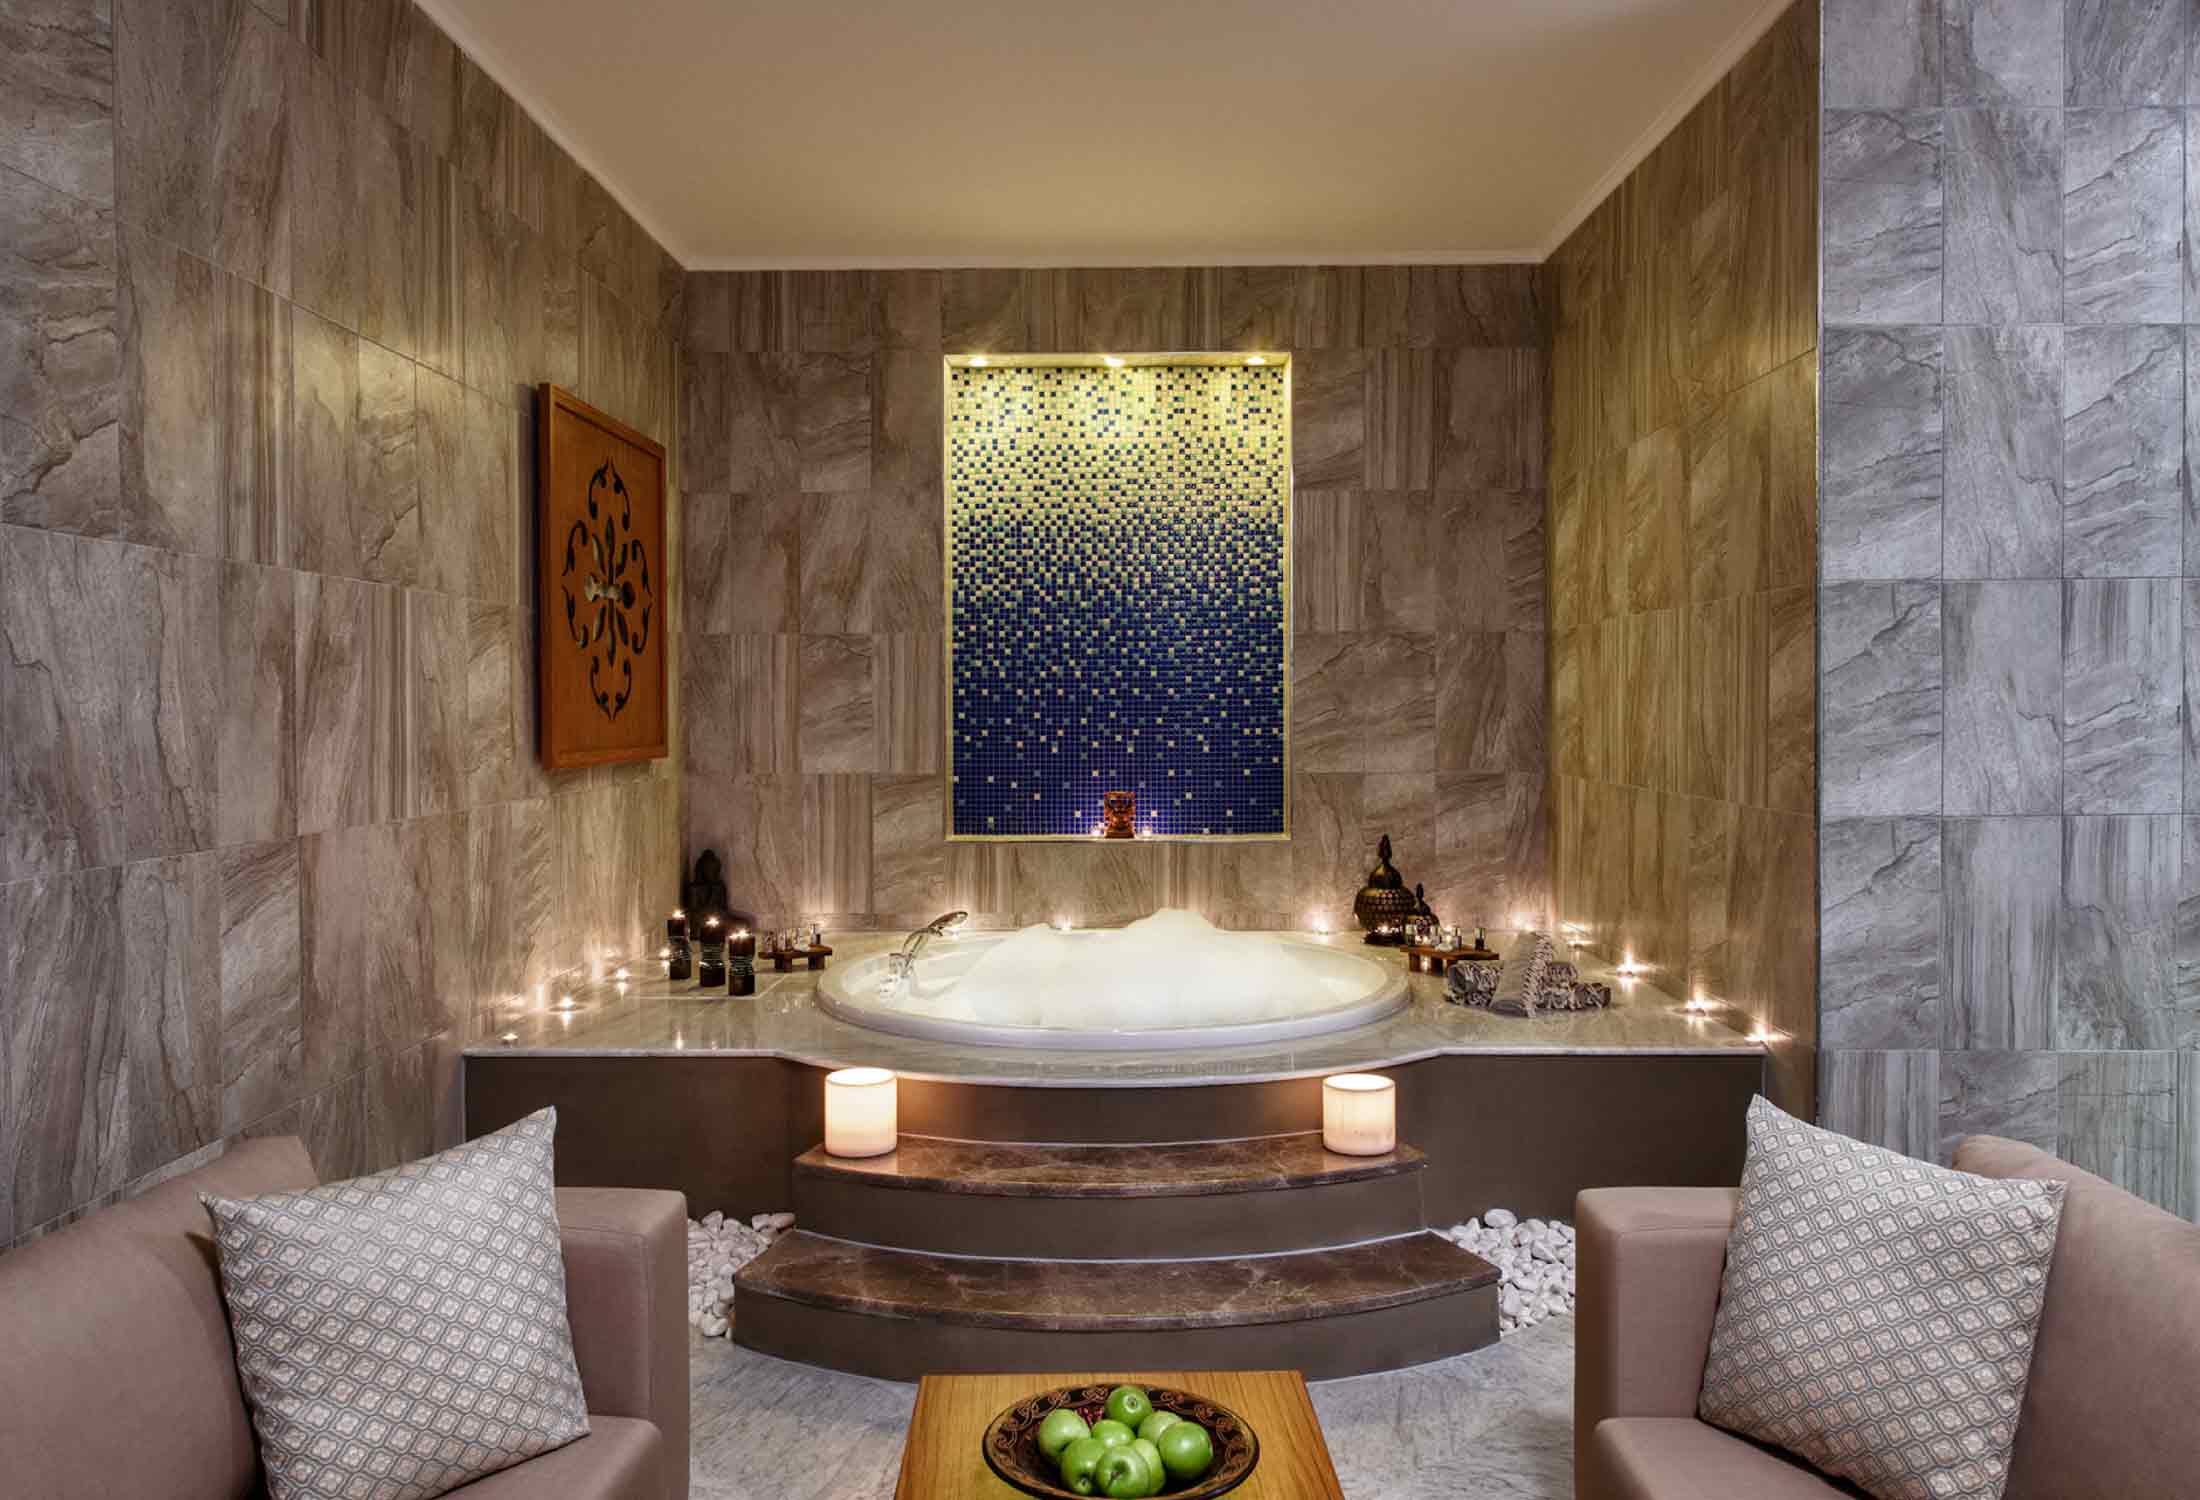 May Thermal Resort Spa Hotel içerisinde hamam, jakuzili küvet veya mini termal havuz bulunan özel termal aile banyoları sunuyor.